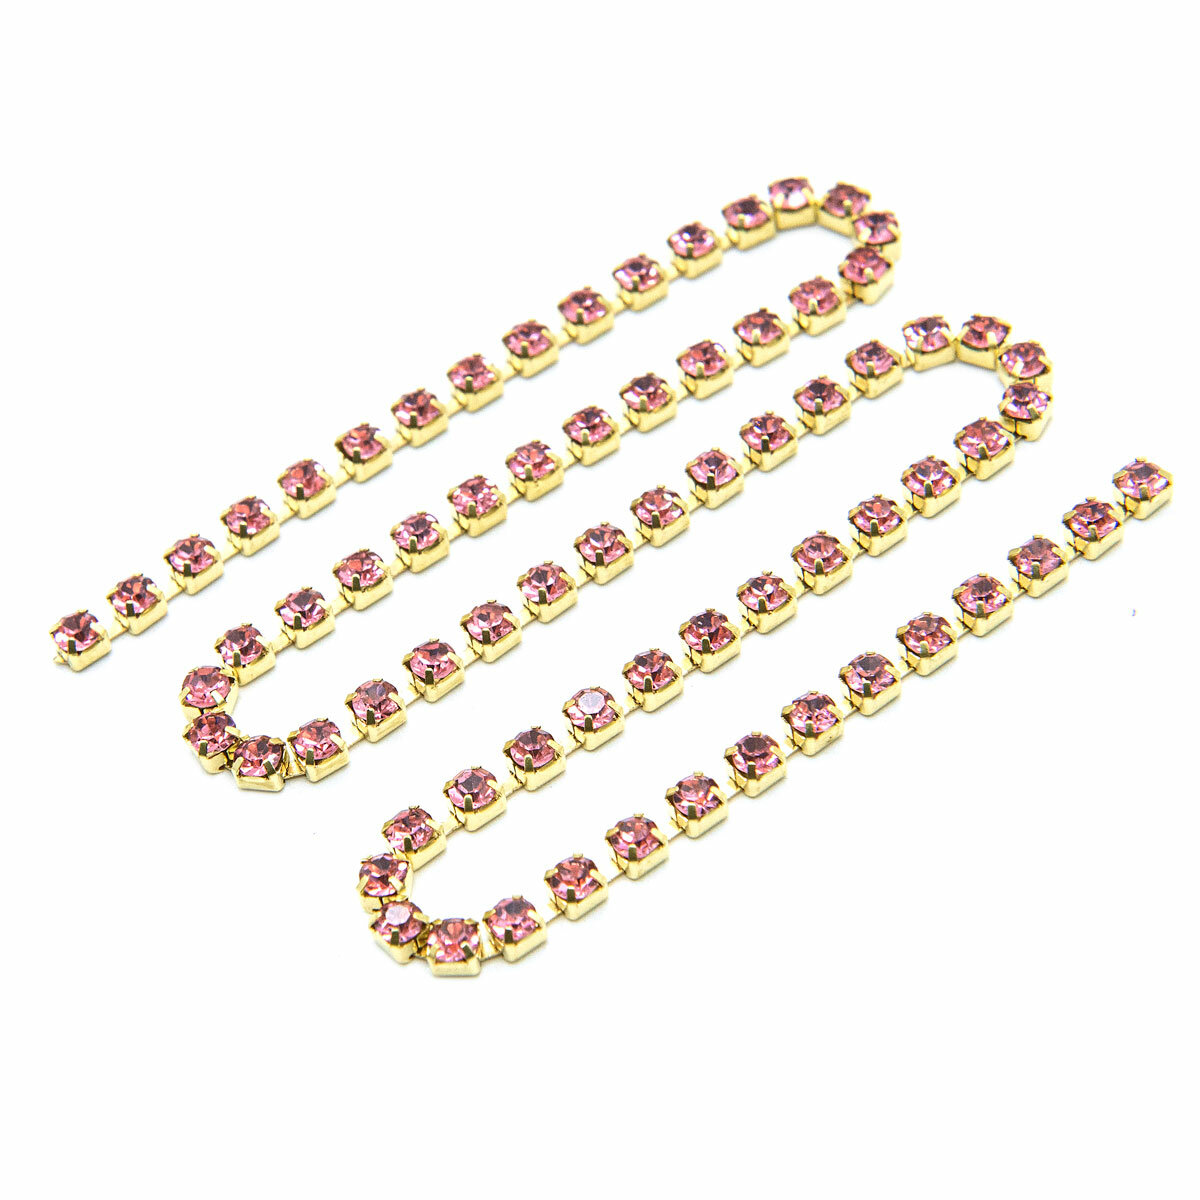 ЦС006ЗЦ3 Стразовые цепочки (золото), розовый, размер 3 мм, 30 см/упак